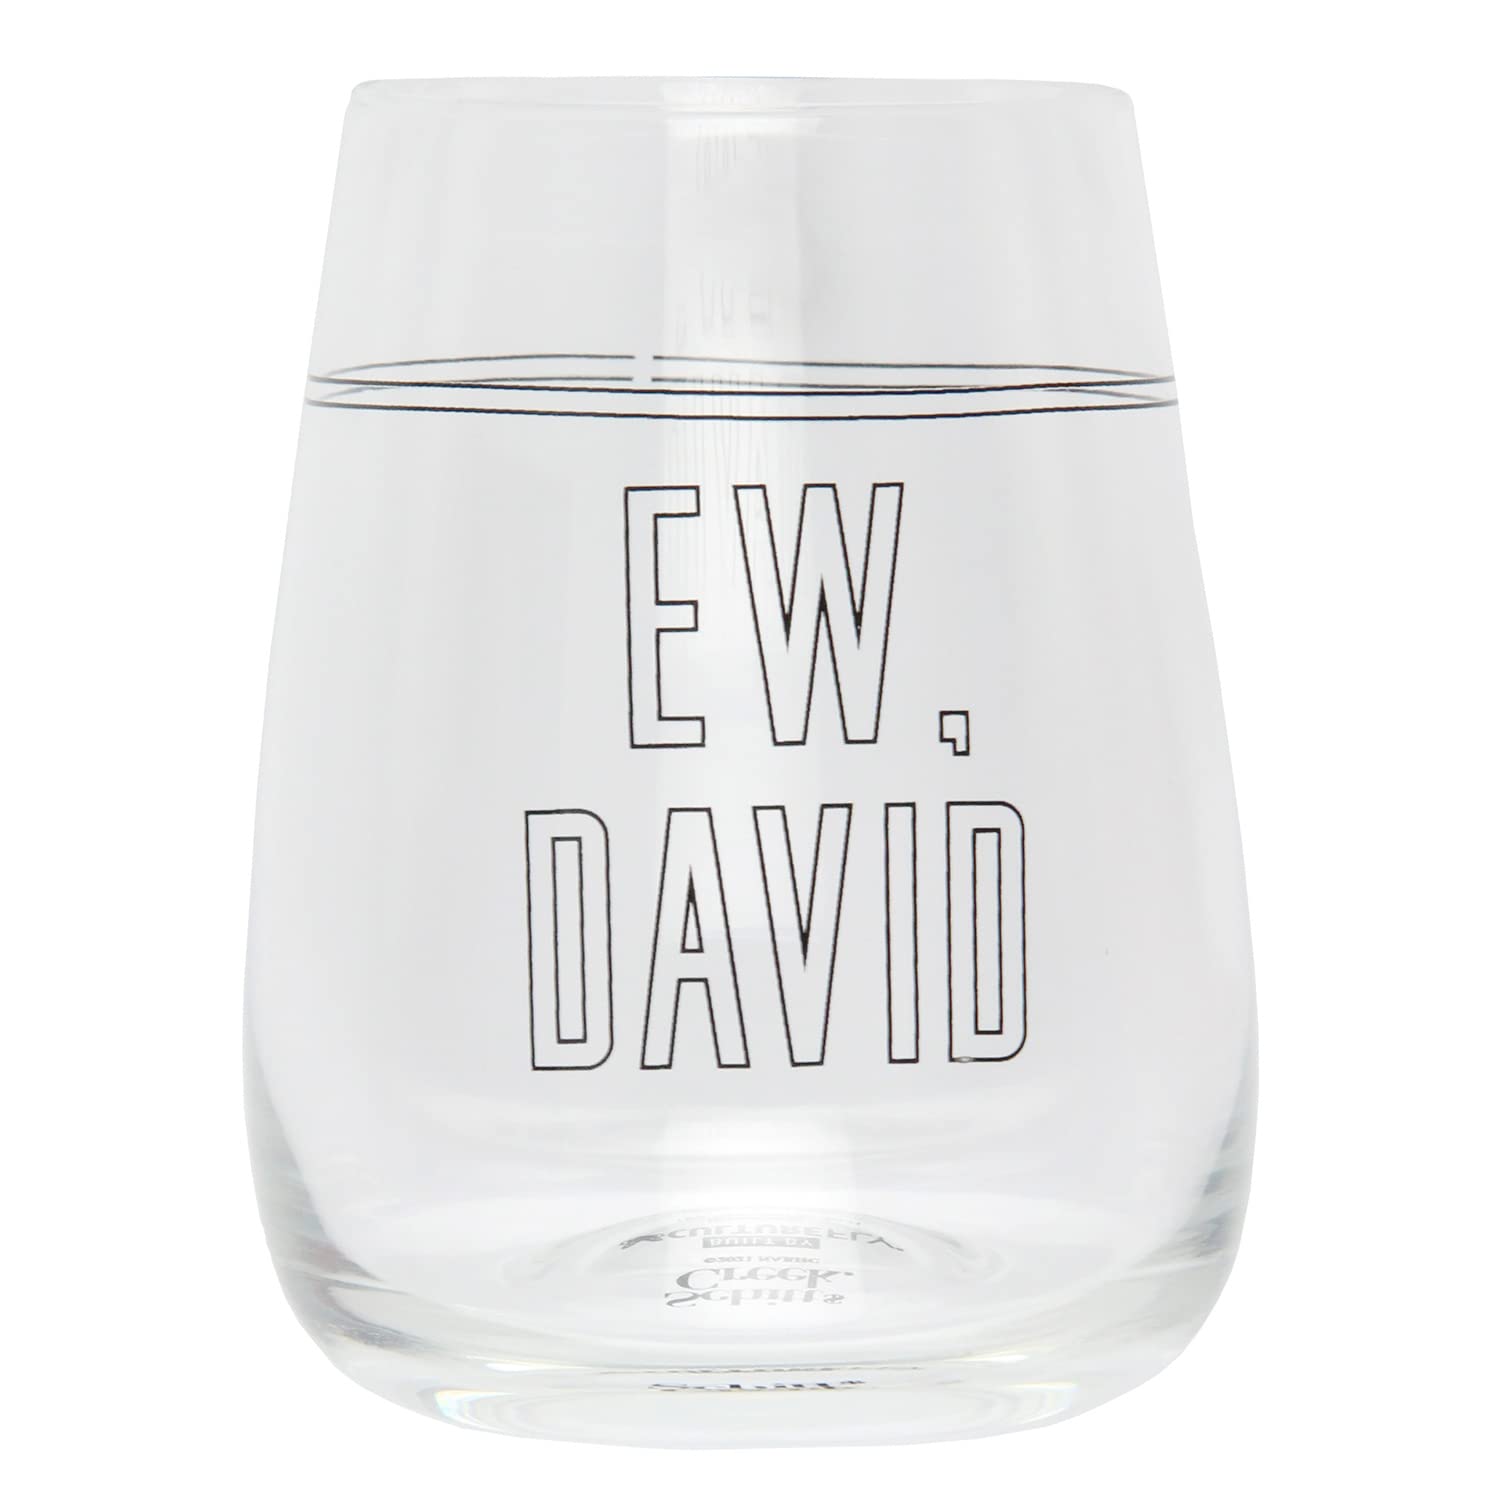 Culture Fly Schitt's Creek Merchandise Ew David Rose 16 Oz. Stemless Wine Glass